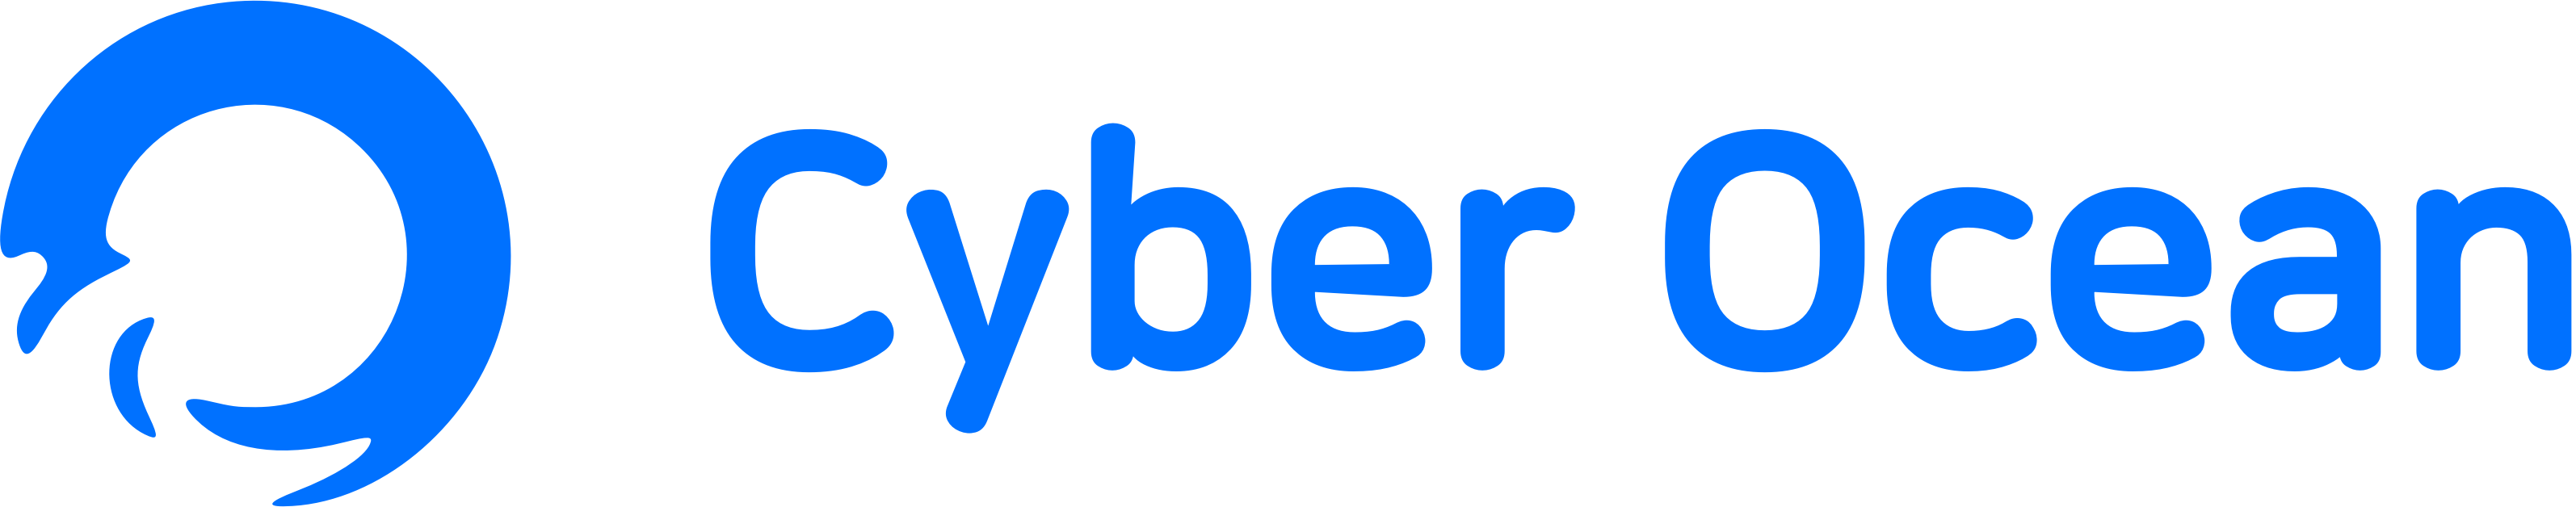 CyberOcean Full Logo